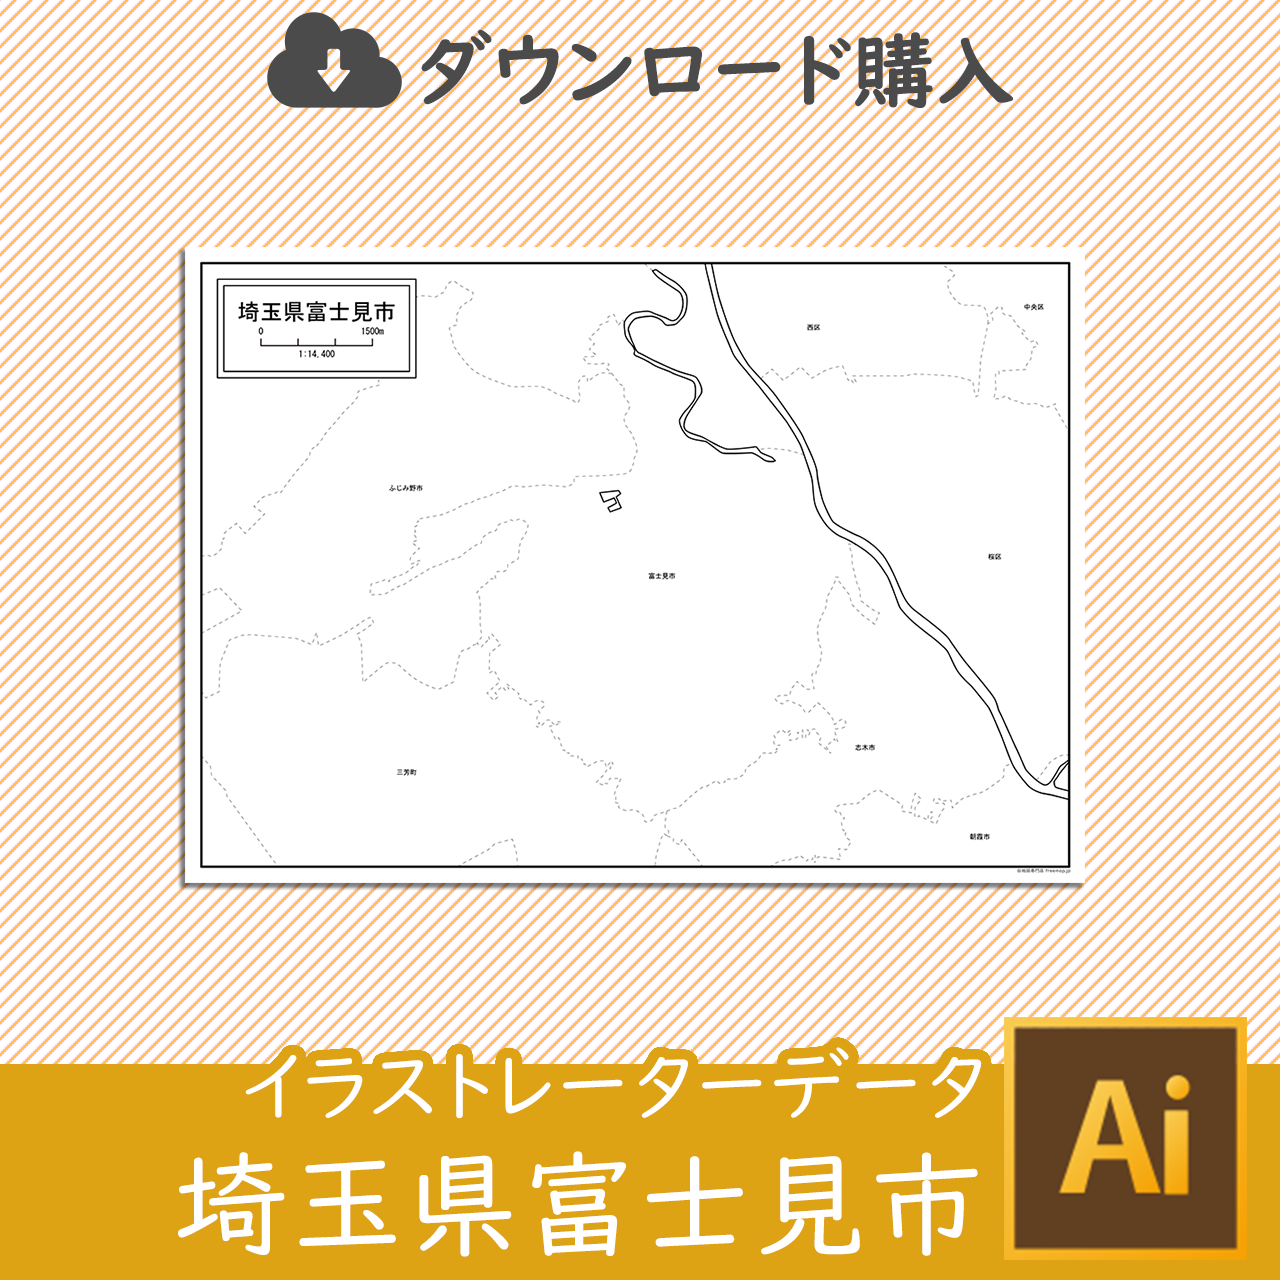 富士見市のaiデータのサムネイル画像